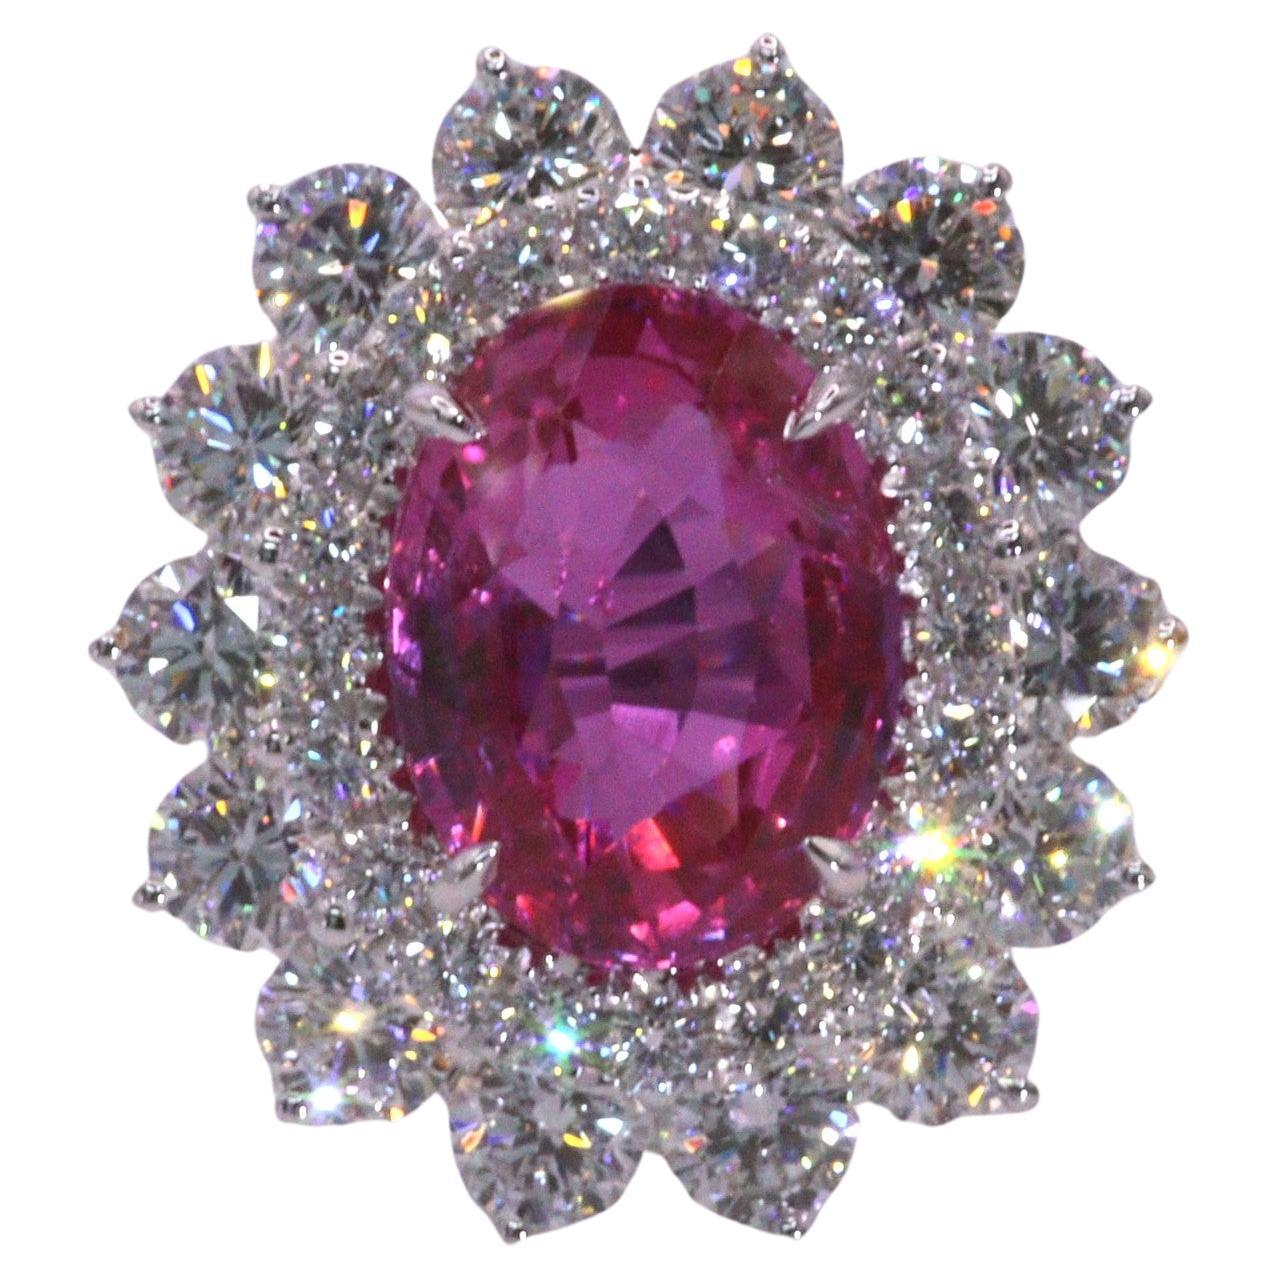 Lassen Sie sich von der bezaubernden Schönheit dieses exquisiten GRS-zertifizierten 5,41-Karat-Saphirs mit seiner seltenen, lebhaften rosa Farbe in einer eleganten ovalen Form bezaubern. Dieser bemerkenswerte Edelstein steht im Mittelpunkt eines